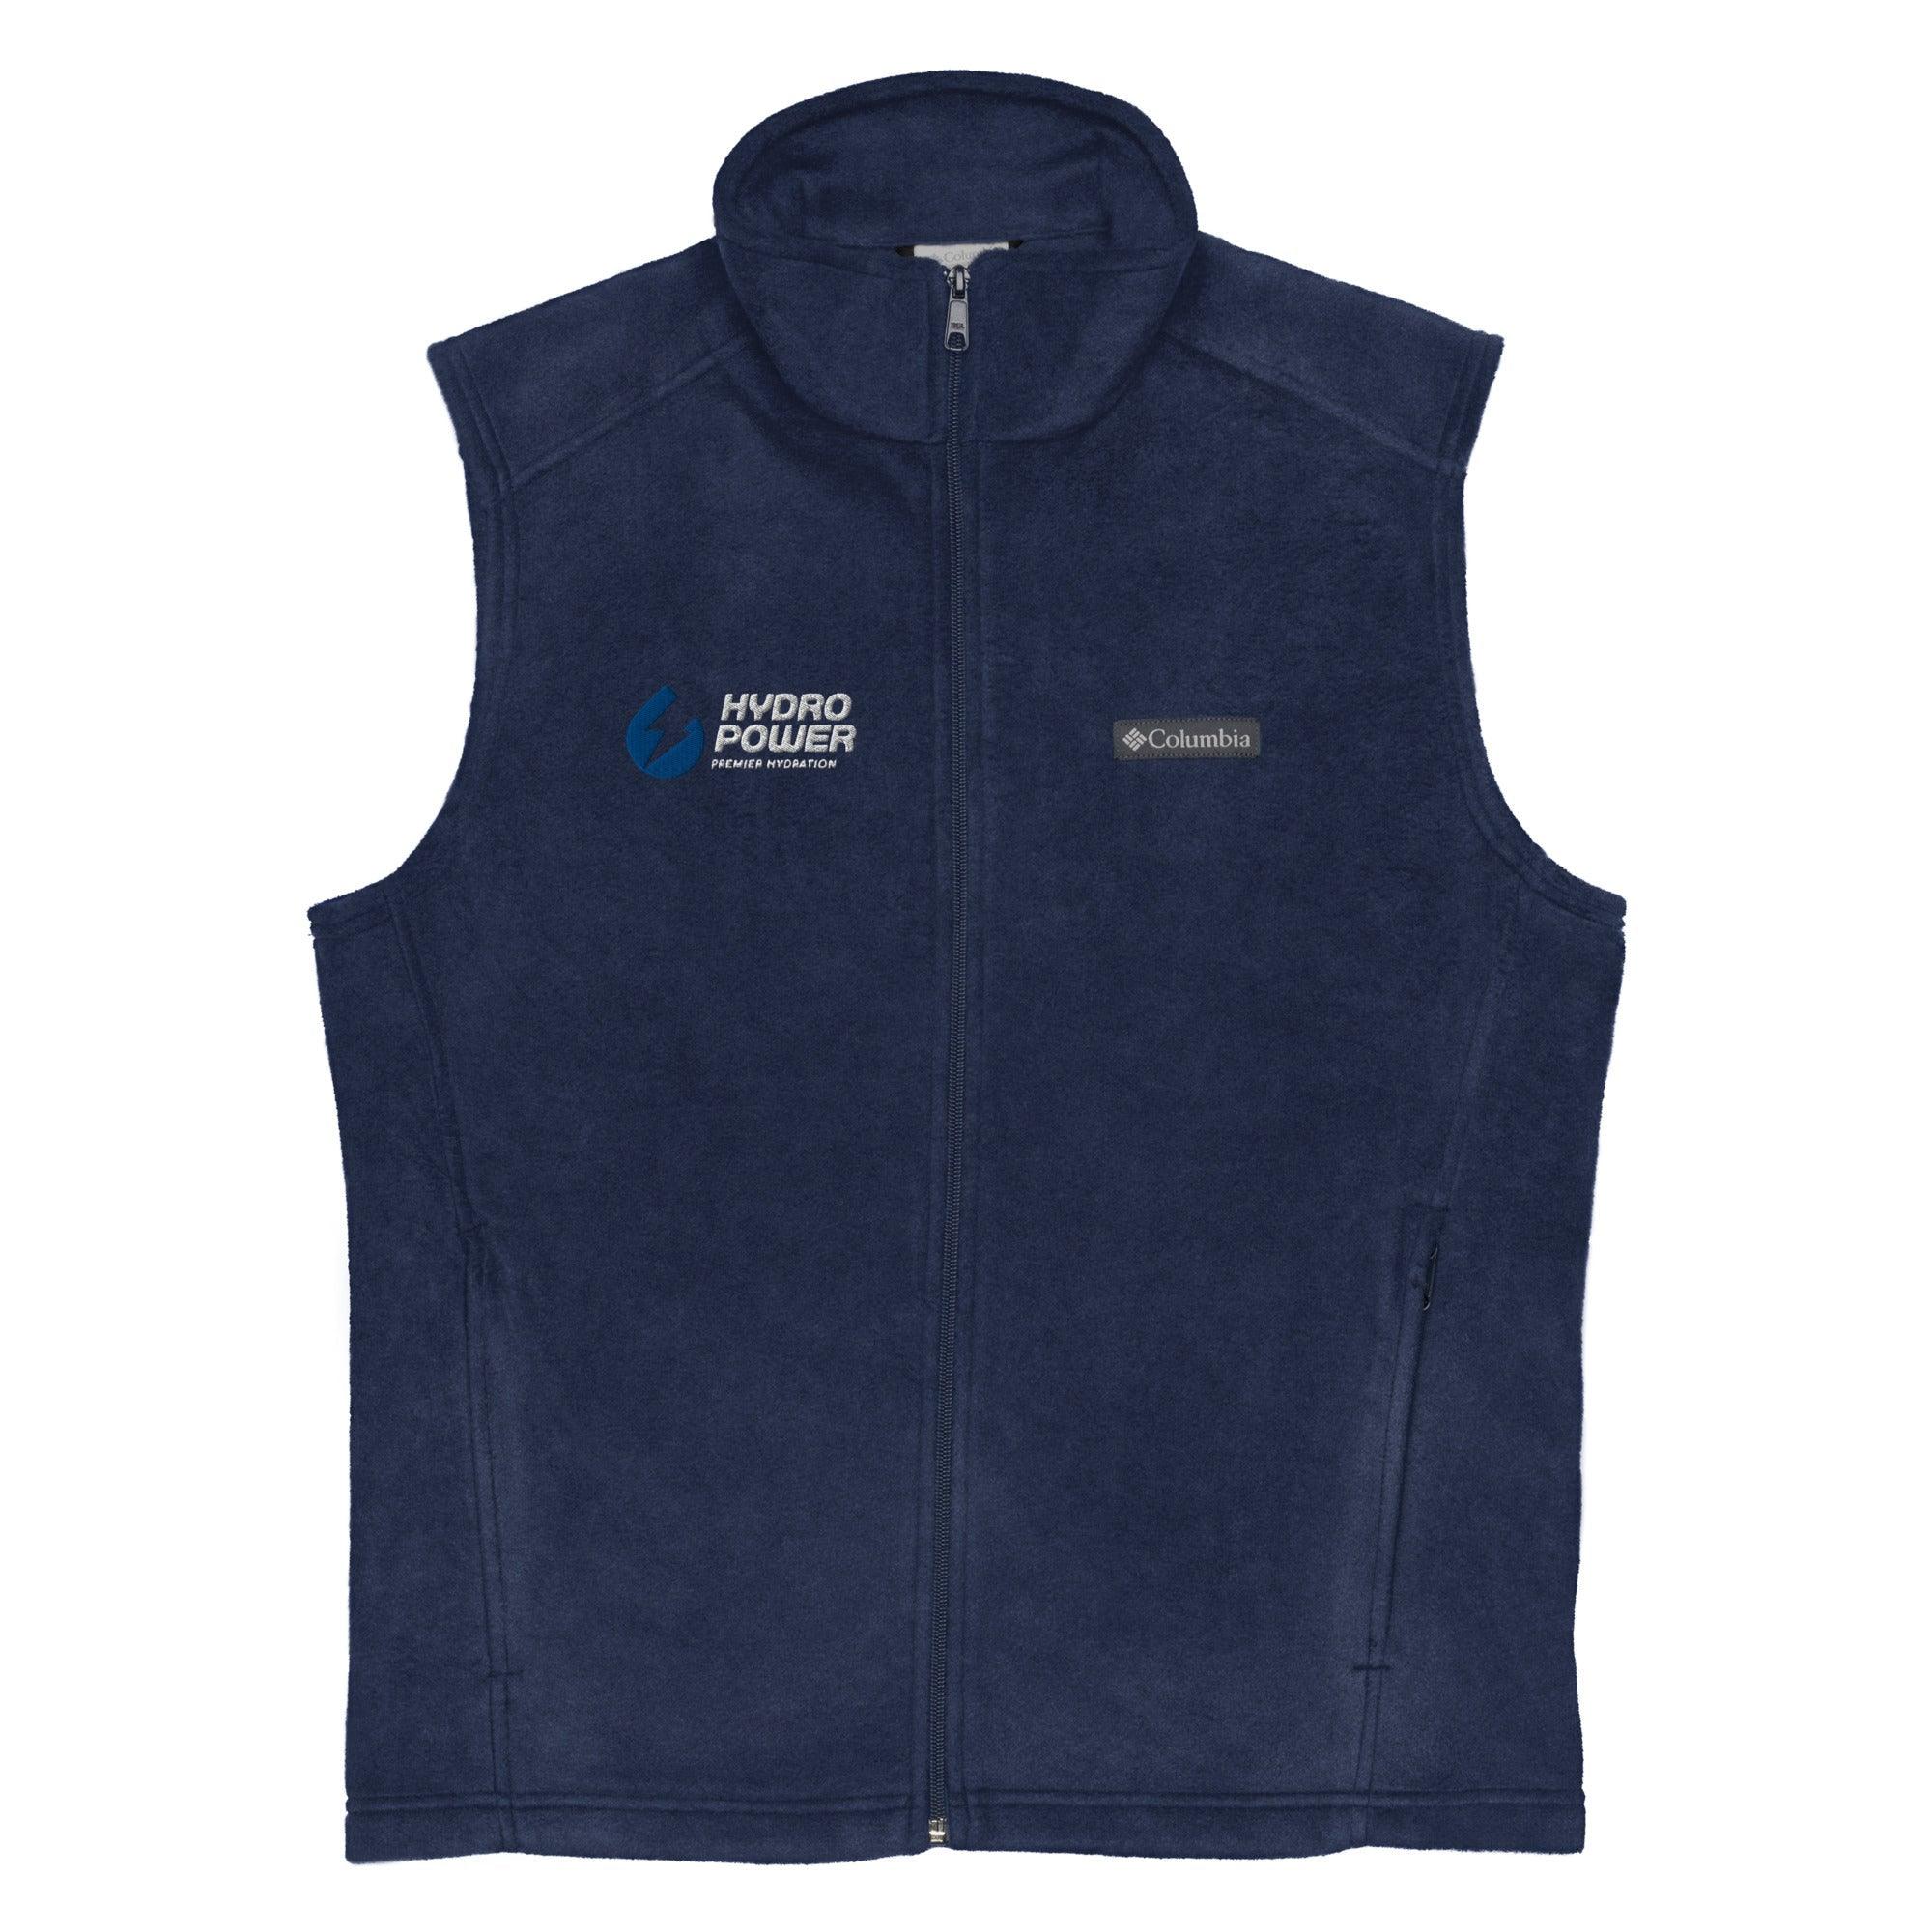 Men's Columbia fleece vest